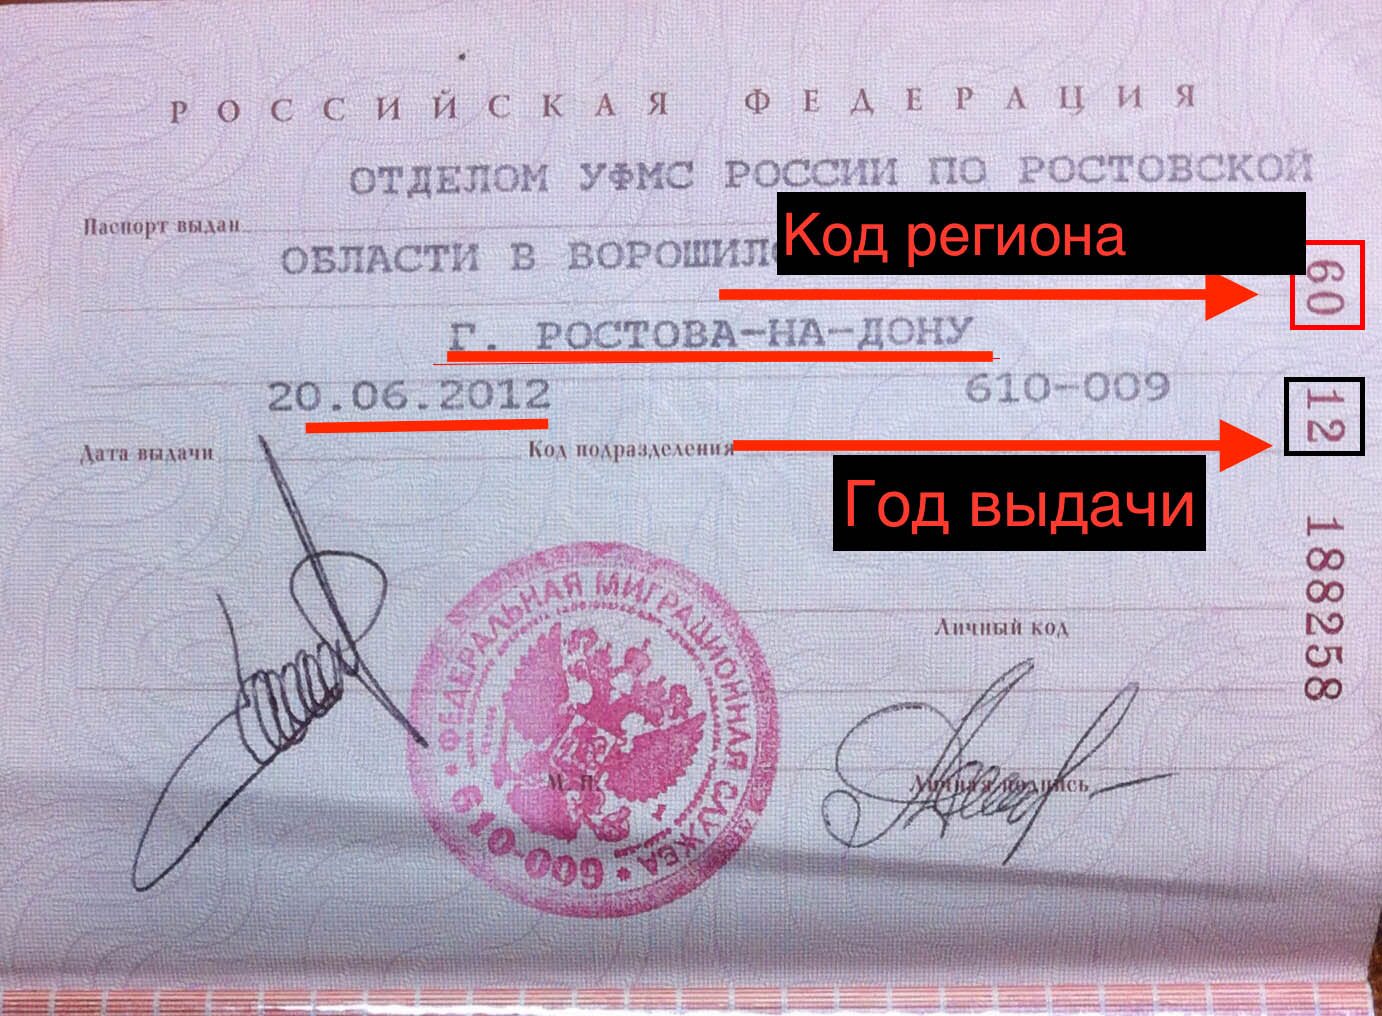 Серия и номер паспорта где находятся в паспорте рф фото